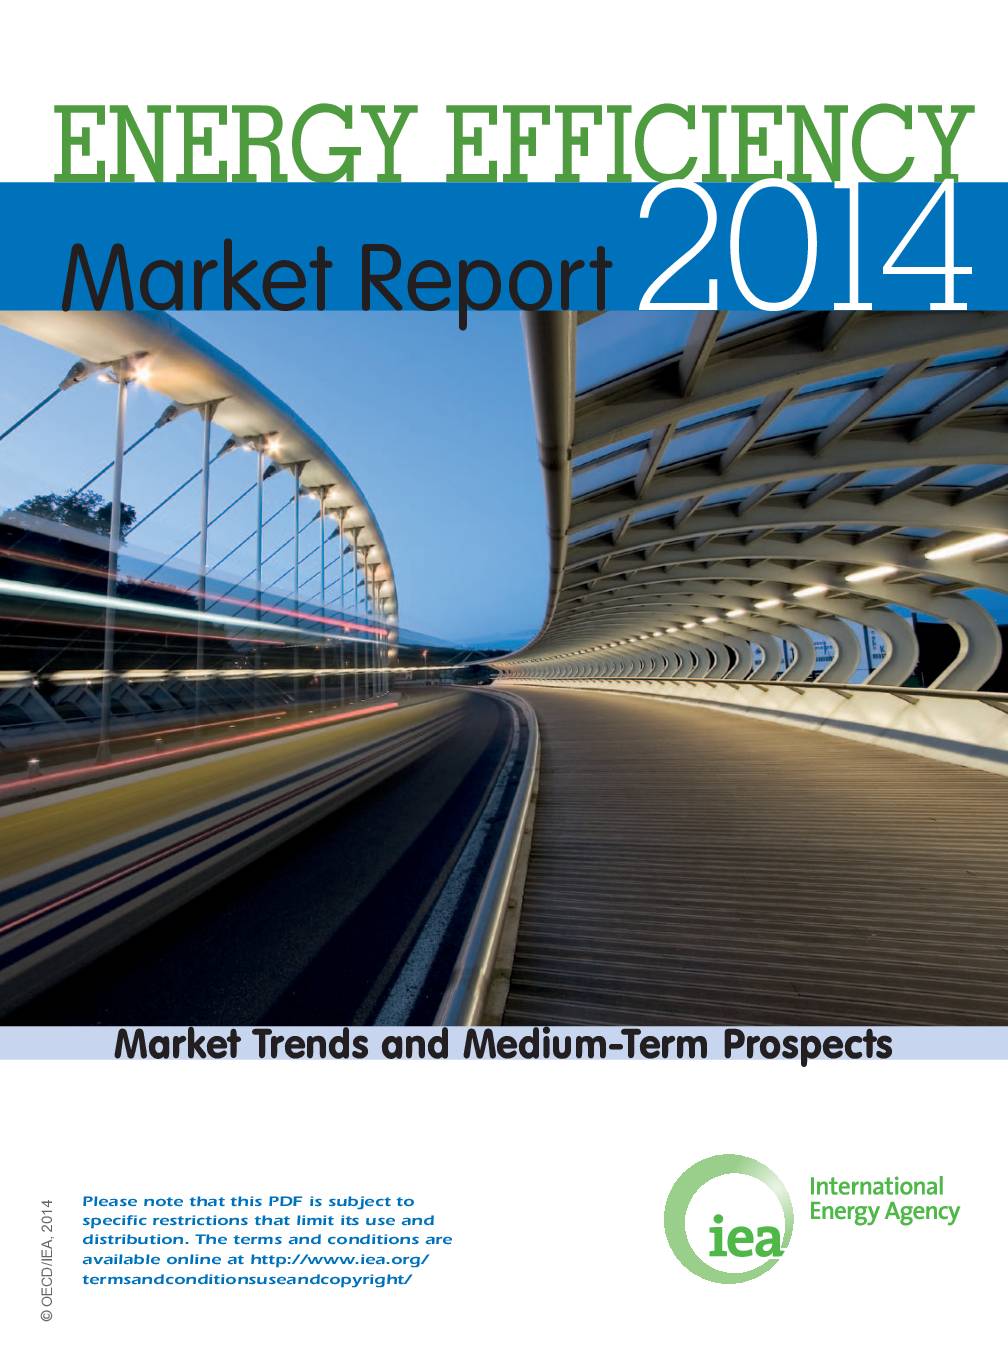 Energy Efficiency Market Report 2014